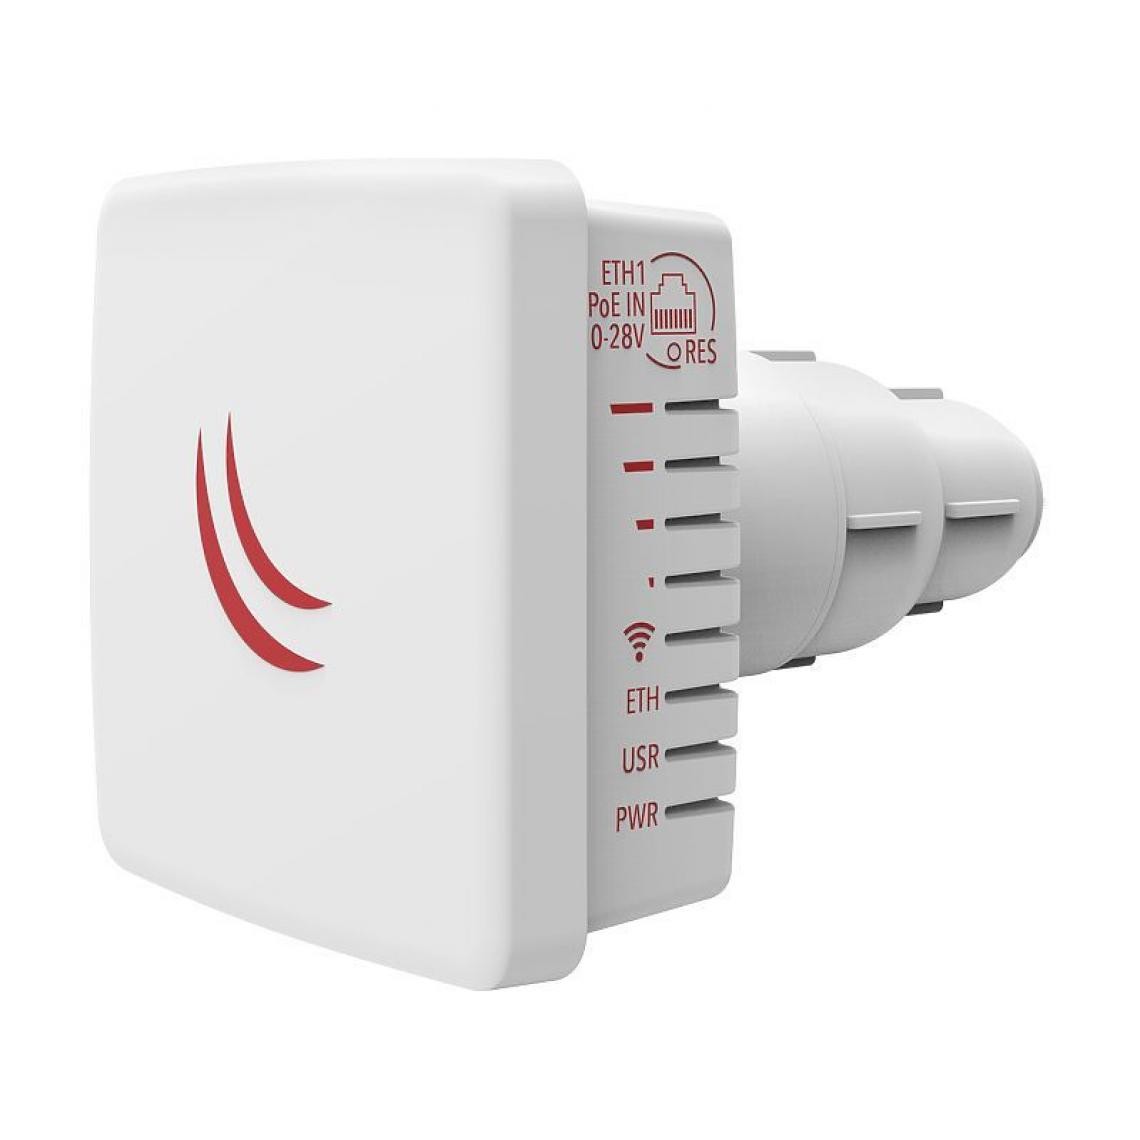 Inconnu - Mikrotik LDF 5 ac Blanc Connexion Ethernet, supportant l'alimentation via ce port (PoE) - Modem / Routeur / Points d'accès